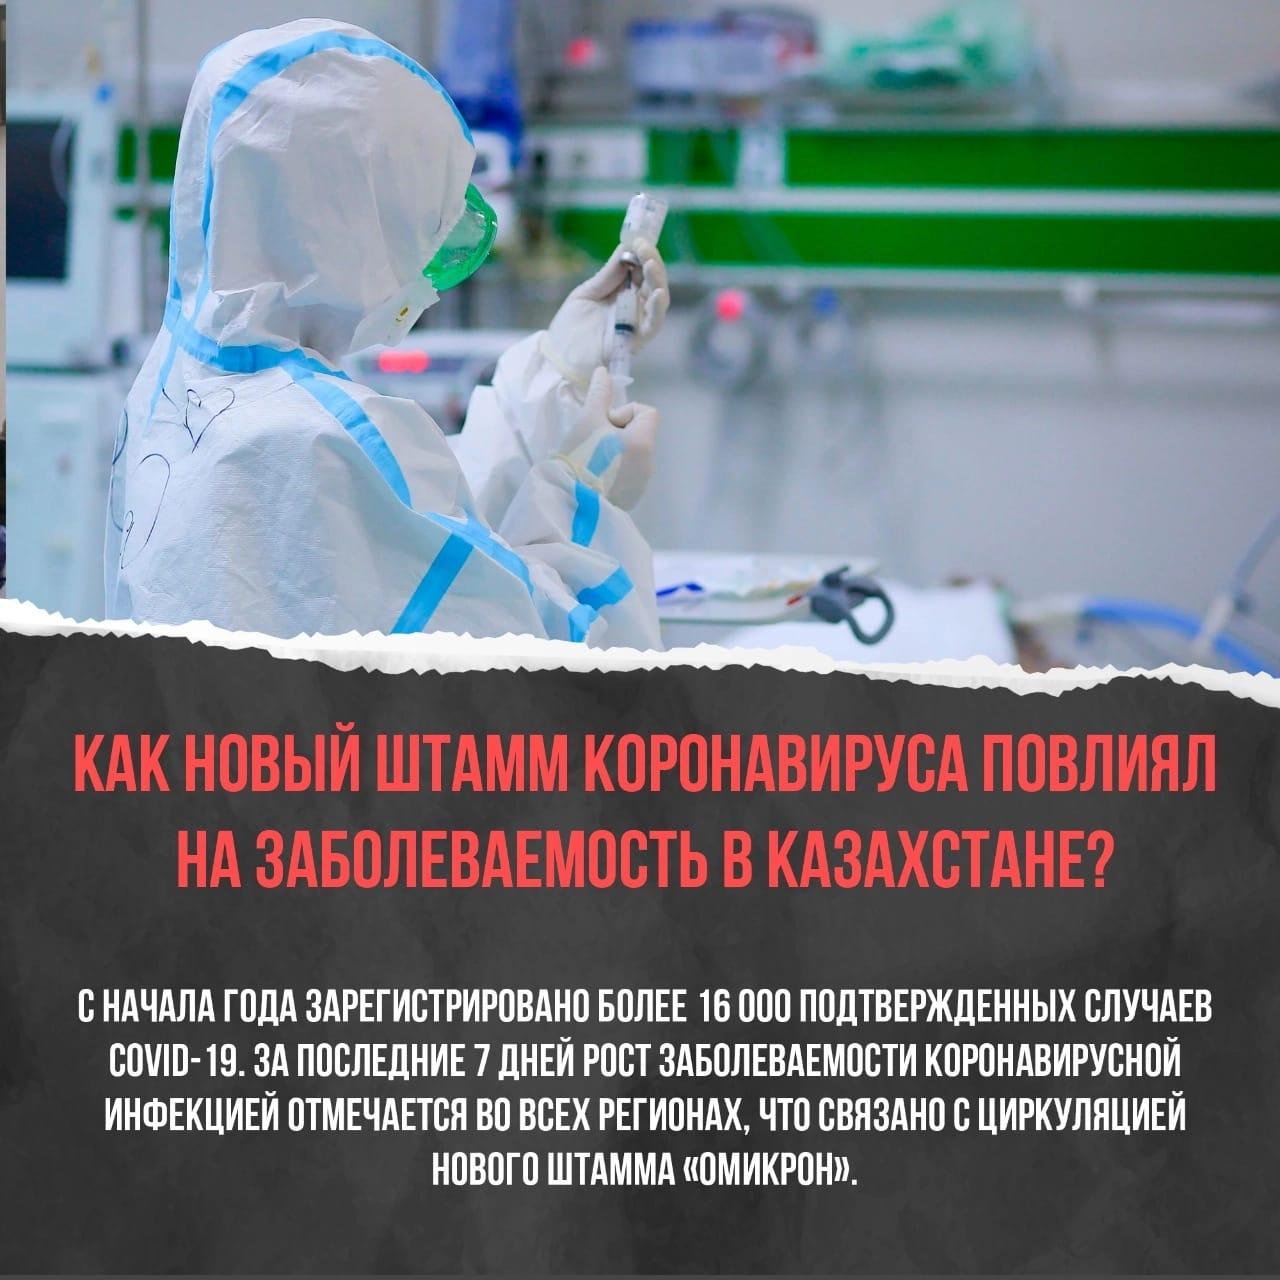 Как новый штамм коронавируса повлиял на заболеваемость в Казахстане?